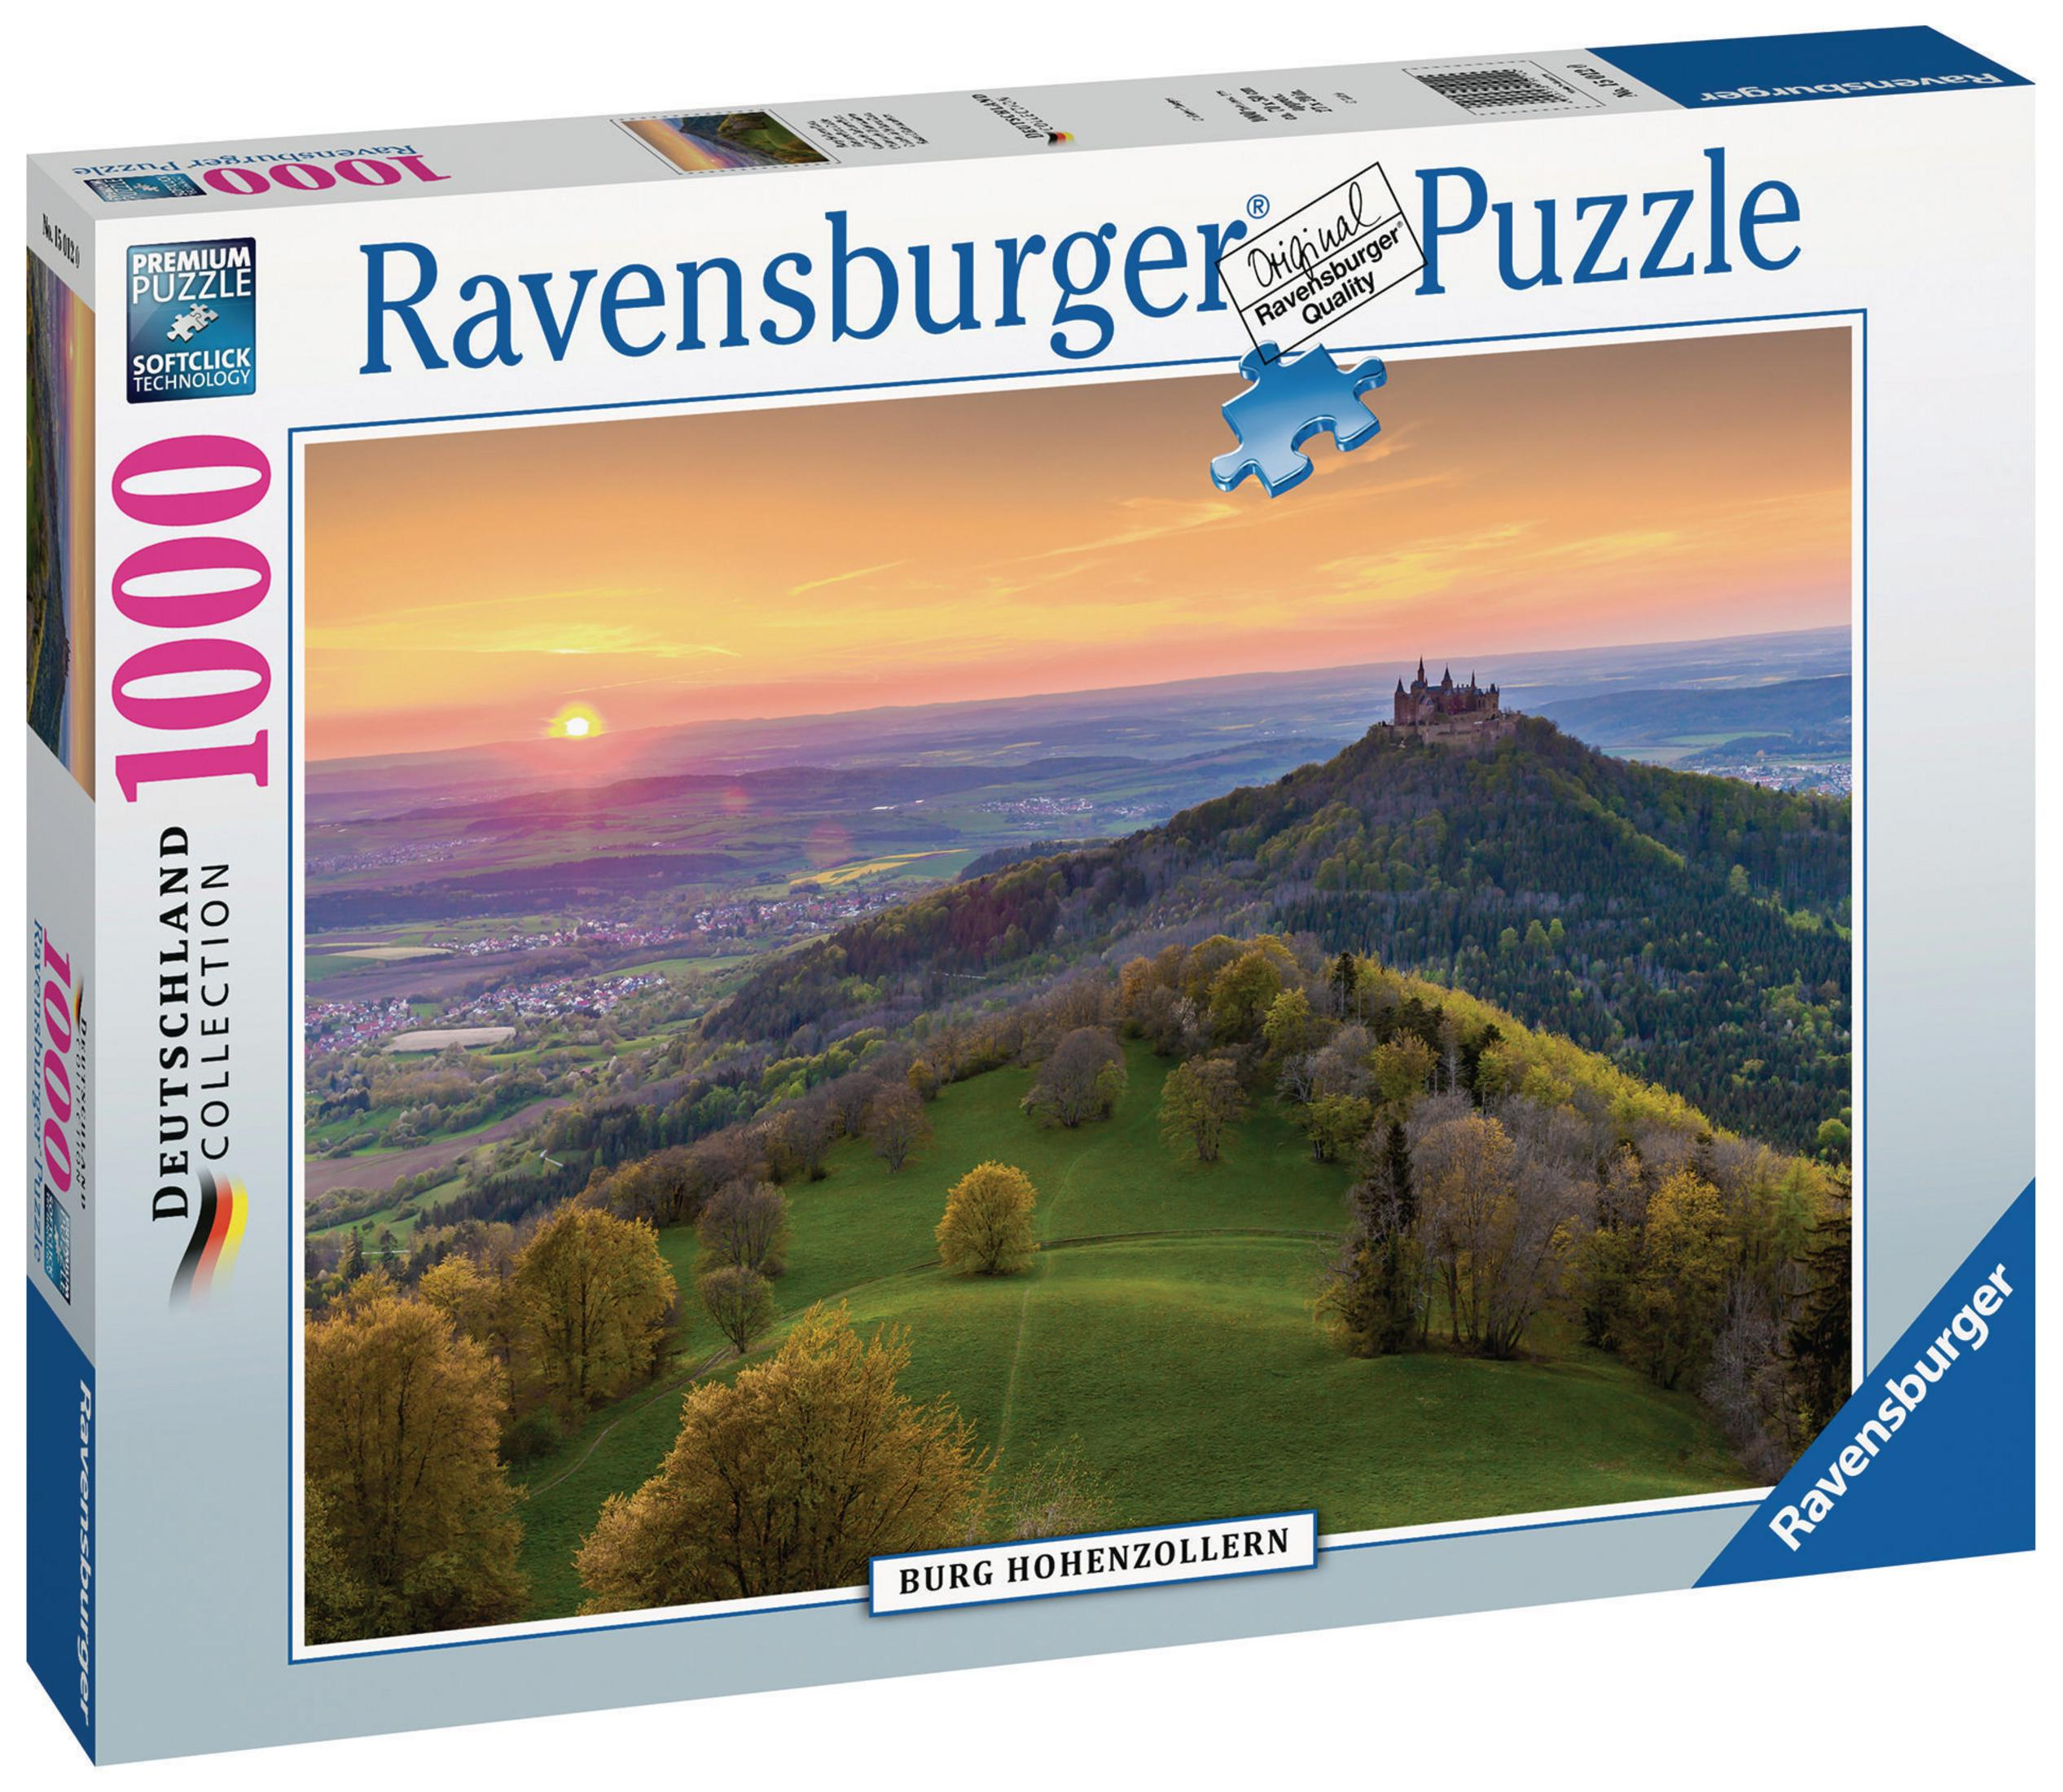 BURG 15012 HOHENZOLLERN RAVENSBURGER Puzzle